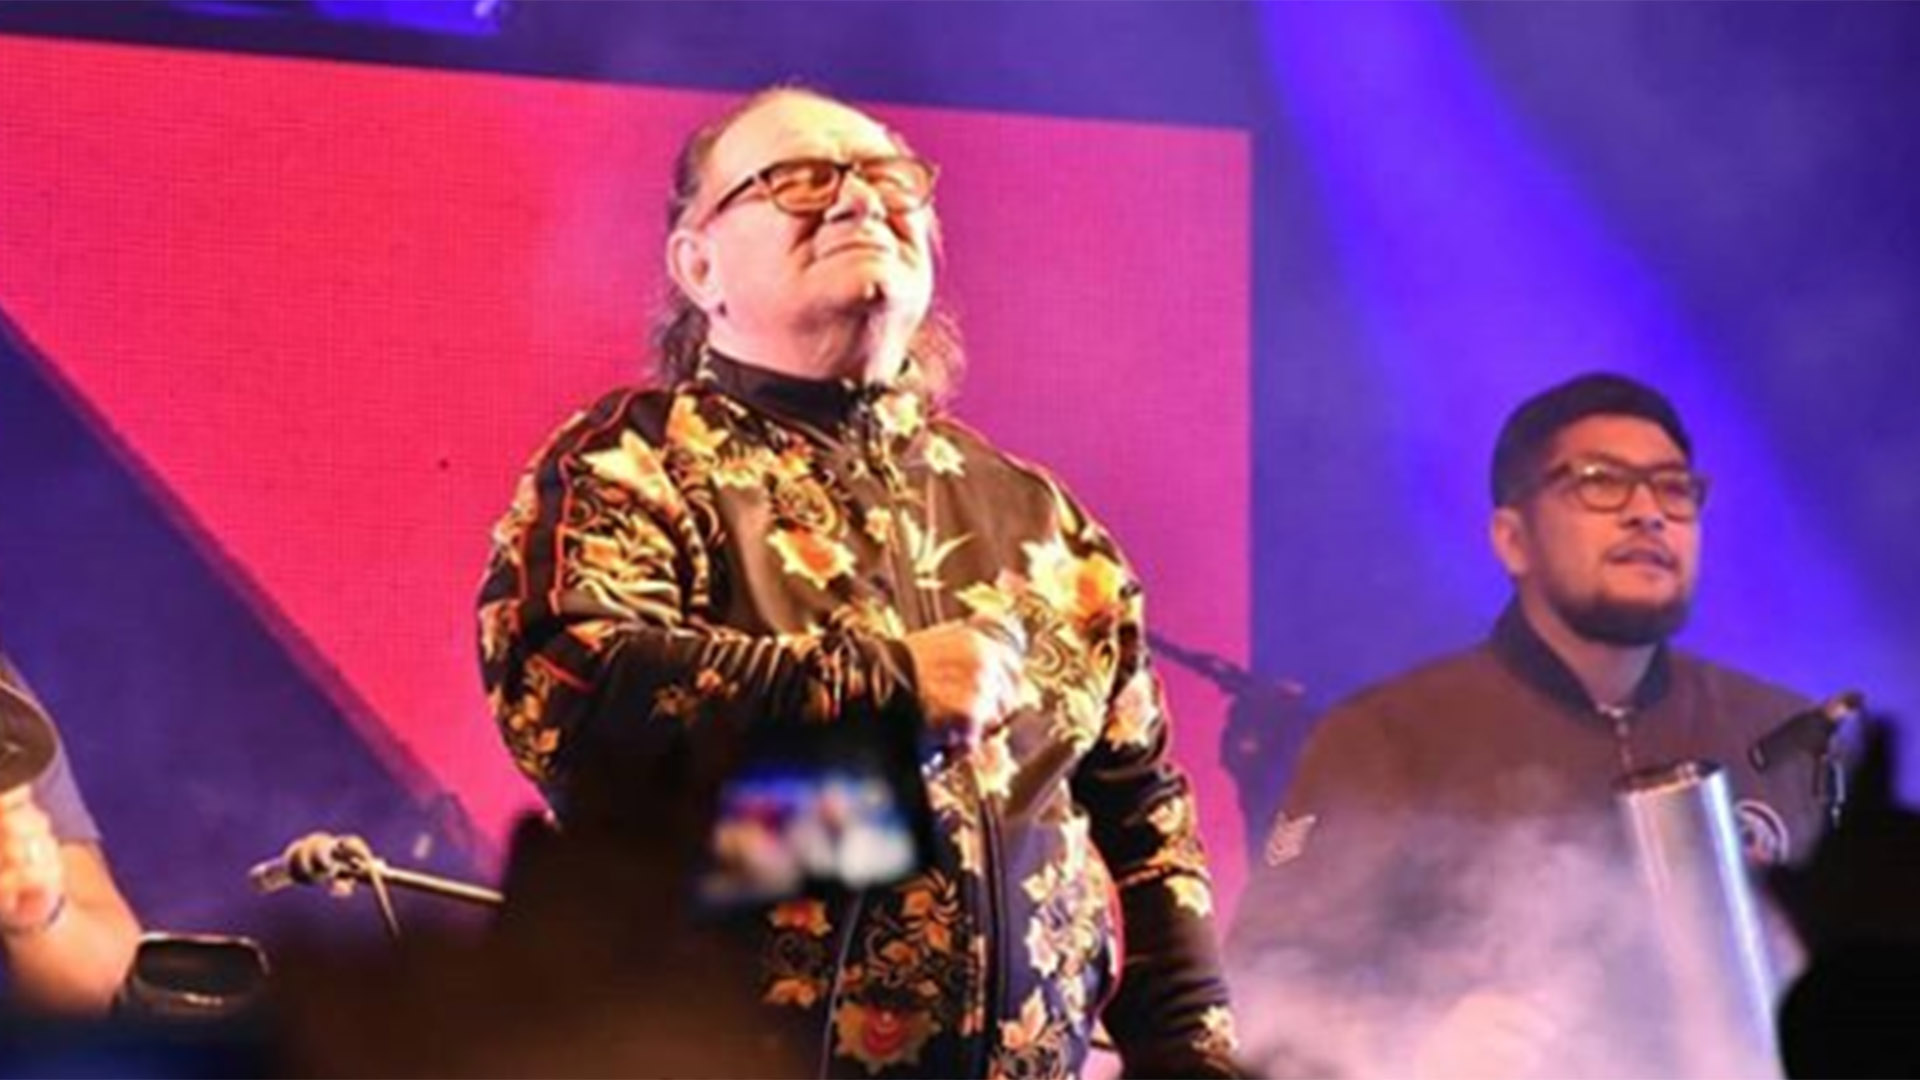 Juan Carlos “Banana” Mascheroni en el escenario, con su grupo de siempre: Los Del Fuego